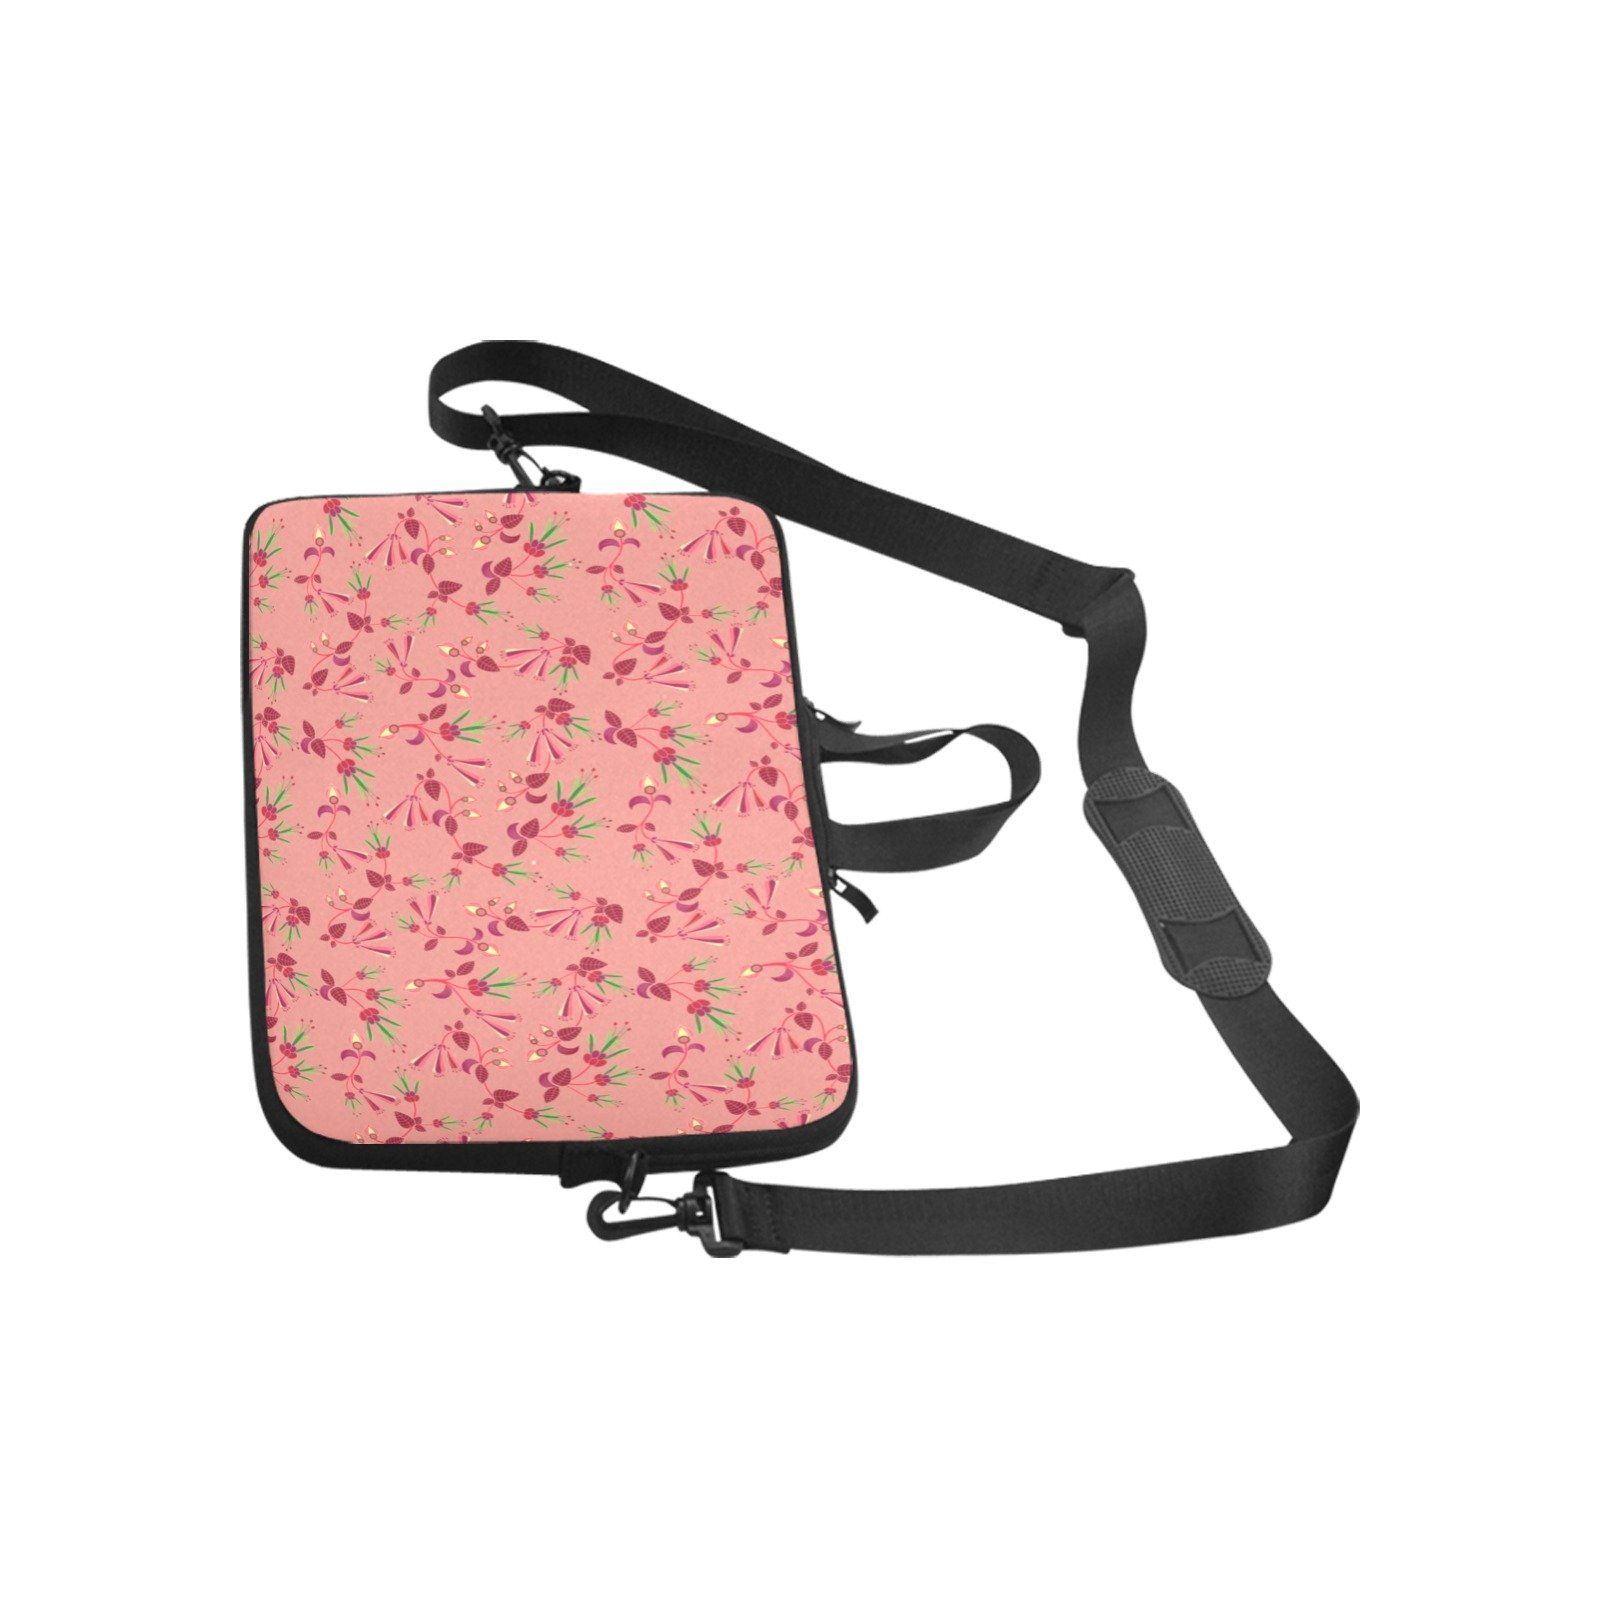 Swift Floral Peach Rouge Remix Laptop Handbags 15" Laptop Handbags 15" e-joyer 